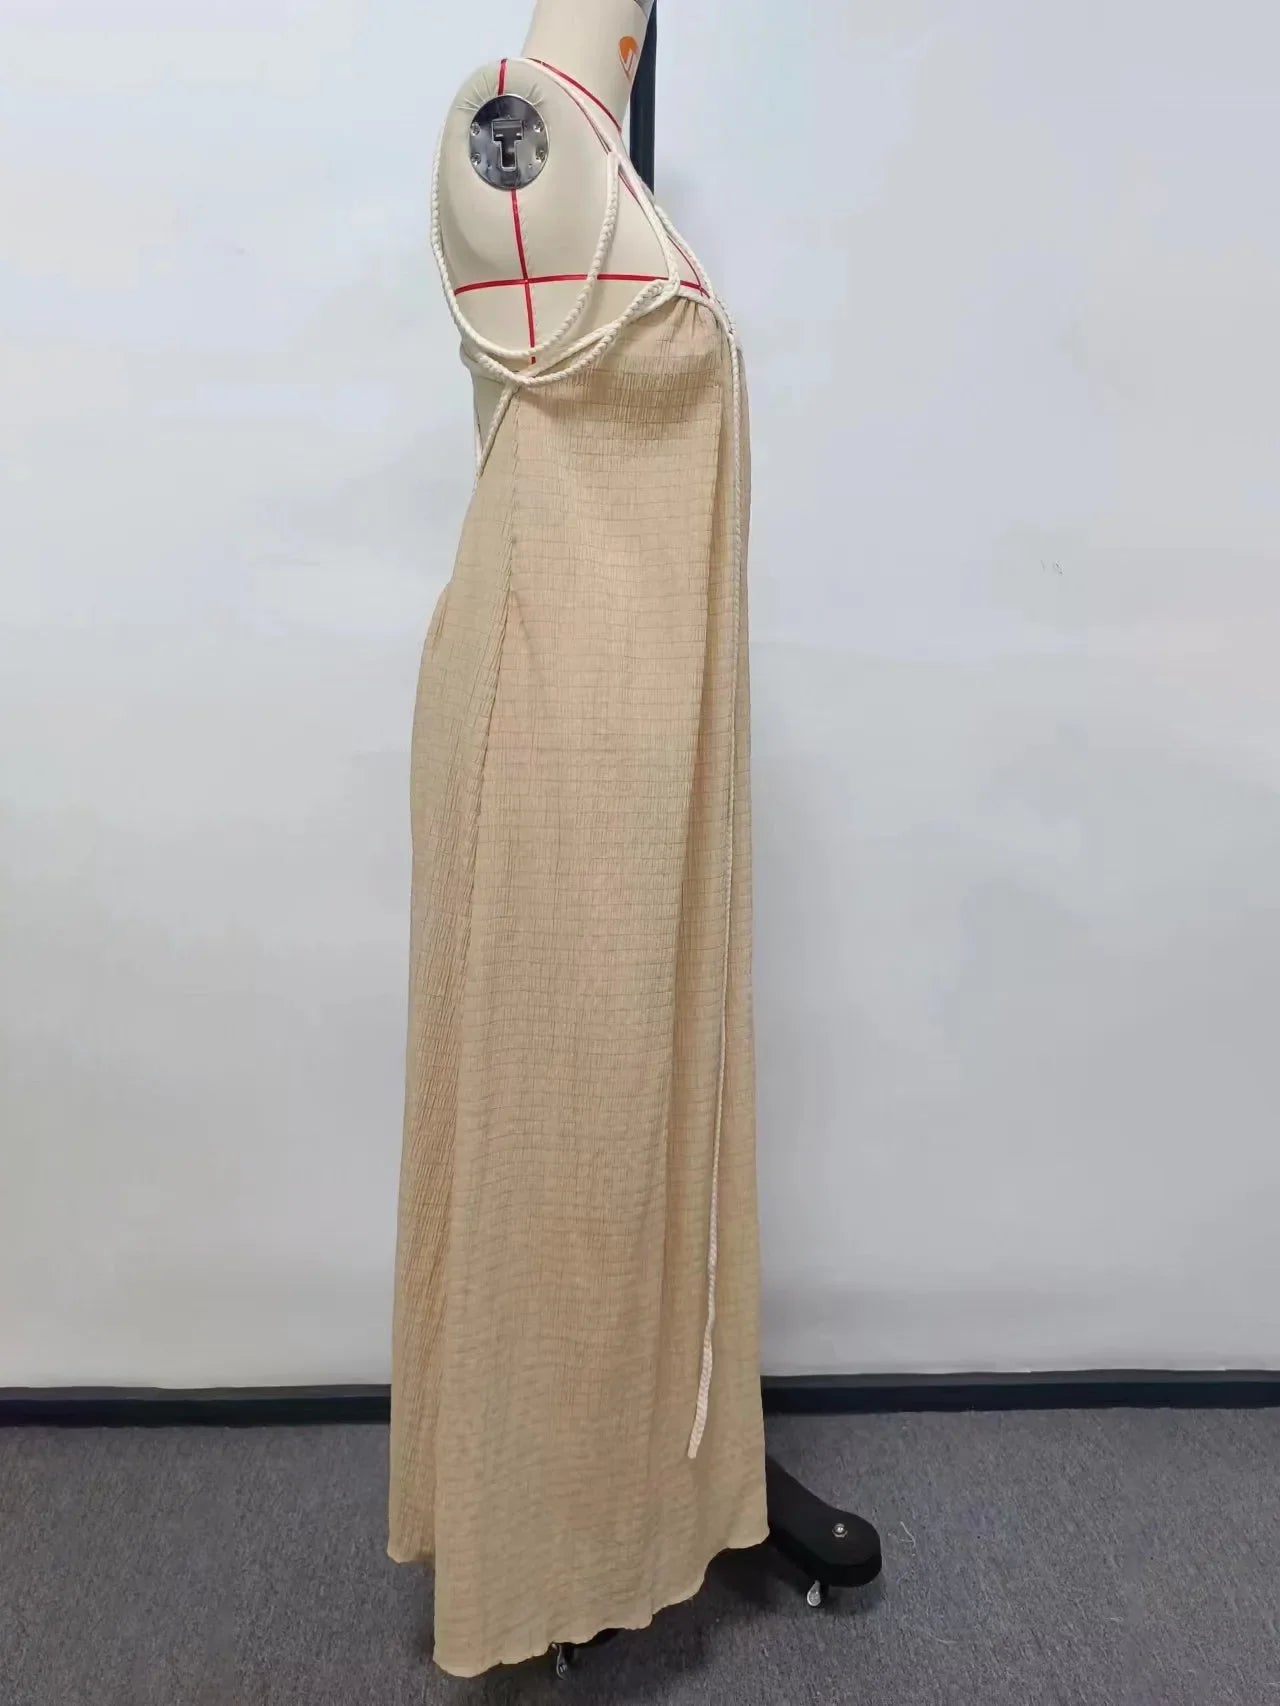 Loose Sleeveless Maxi Beach Dress: Off-Shoulder Crochet Cut-Out Design - All Dresses - Dresses - 7 - 2024